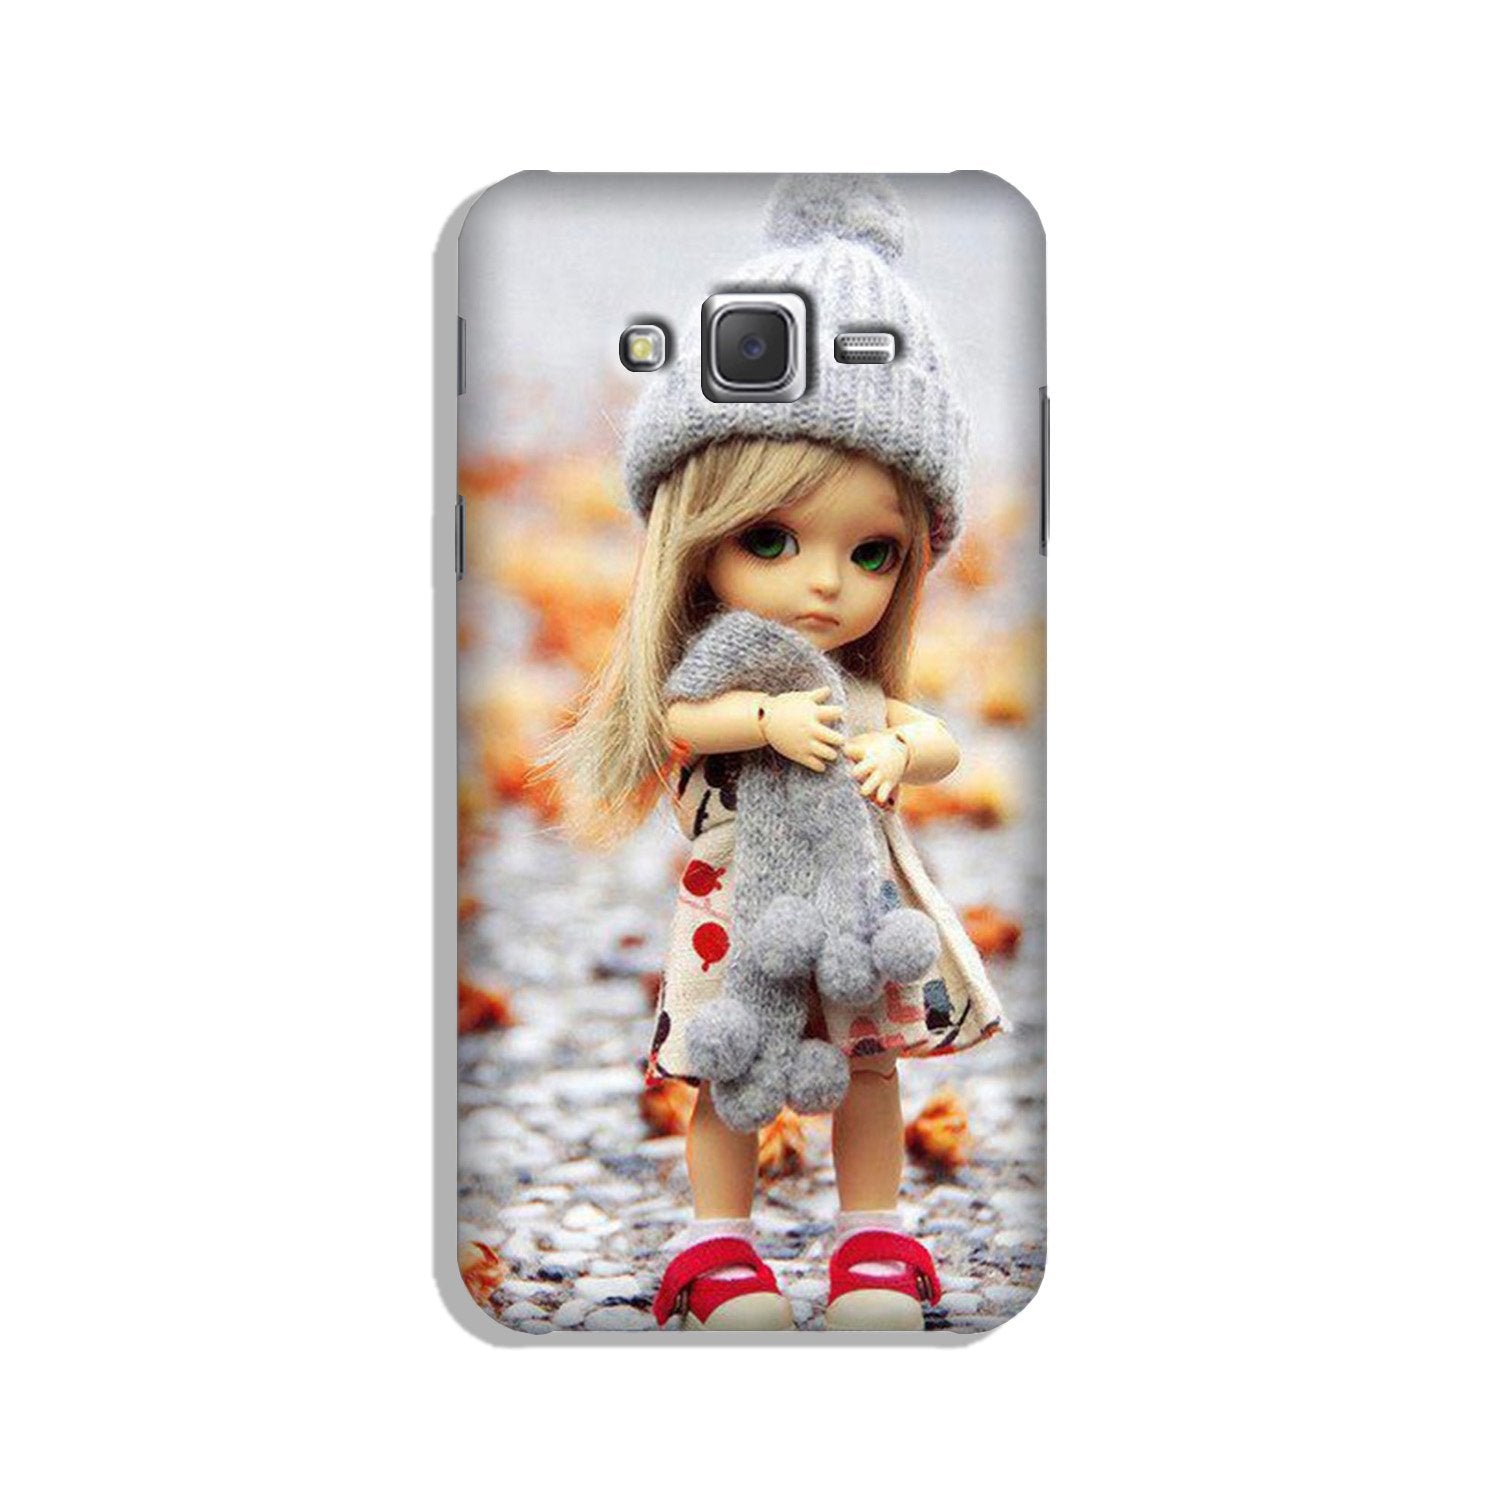 Cute Doll Case for Galaxy J7 (2015)